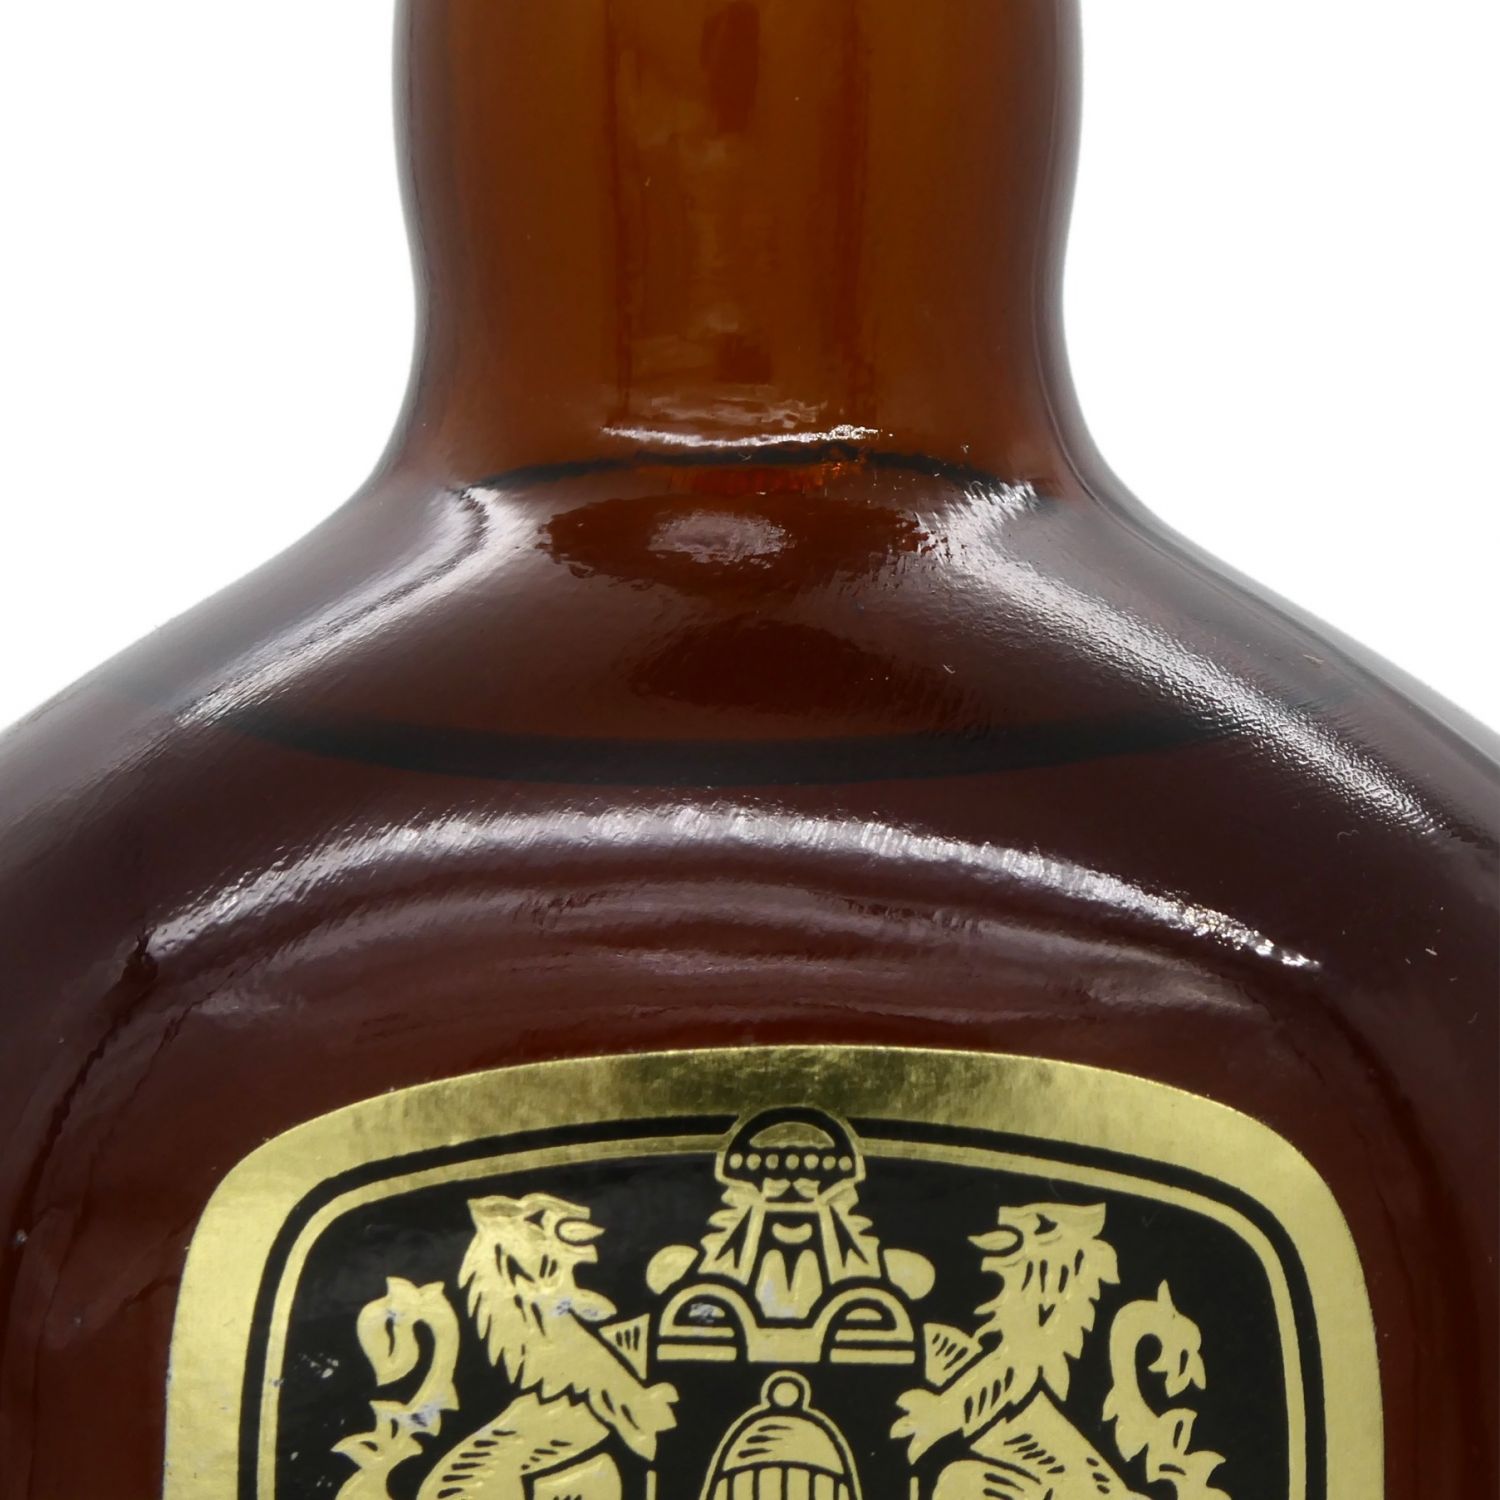 【古酒】BELL’S Royal Reserve 20年 スコッチウィスキー